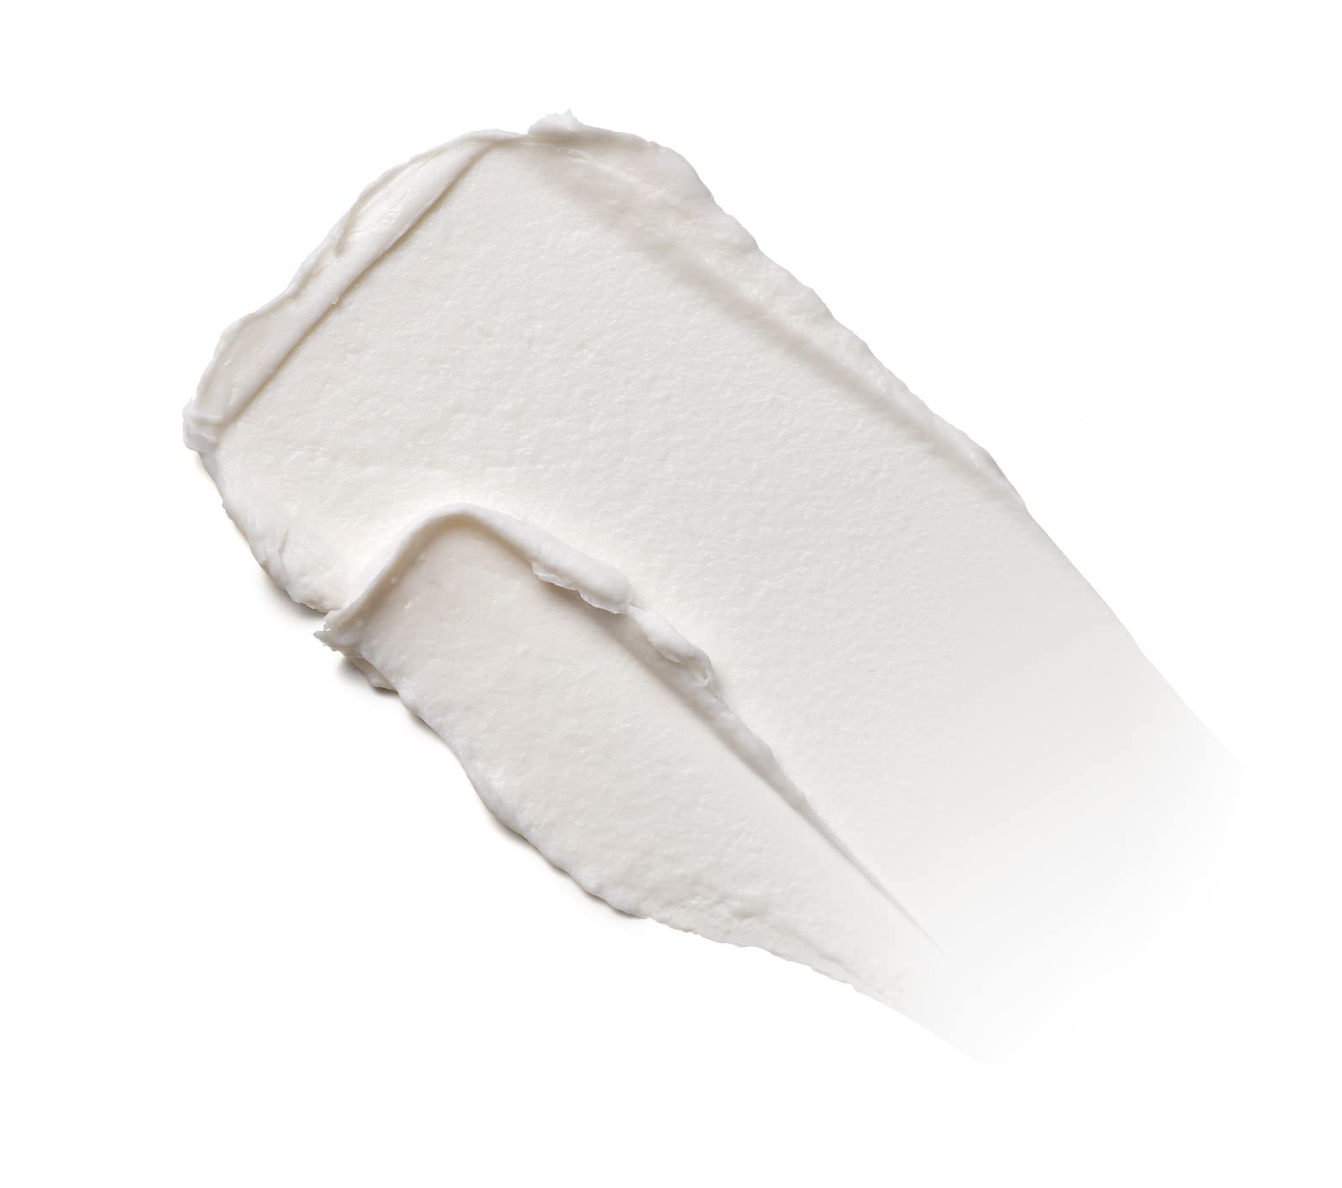 Moroccanoil Molding Cream, 3.4 Fl. Oz